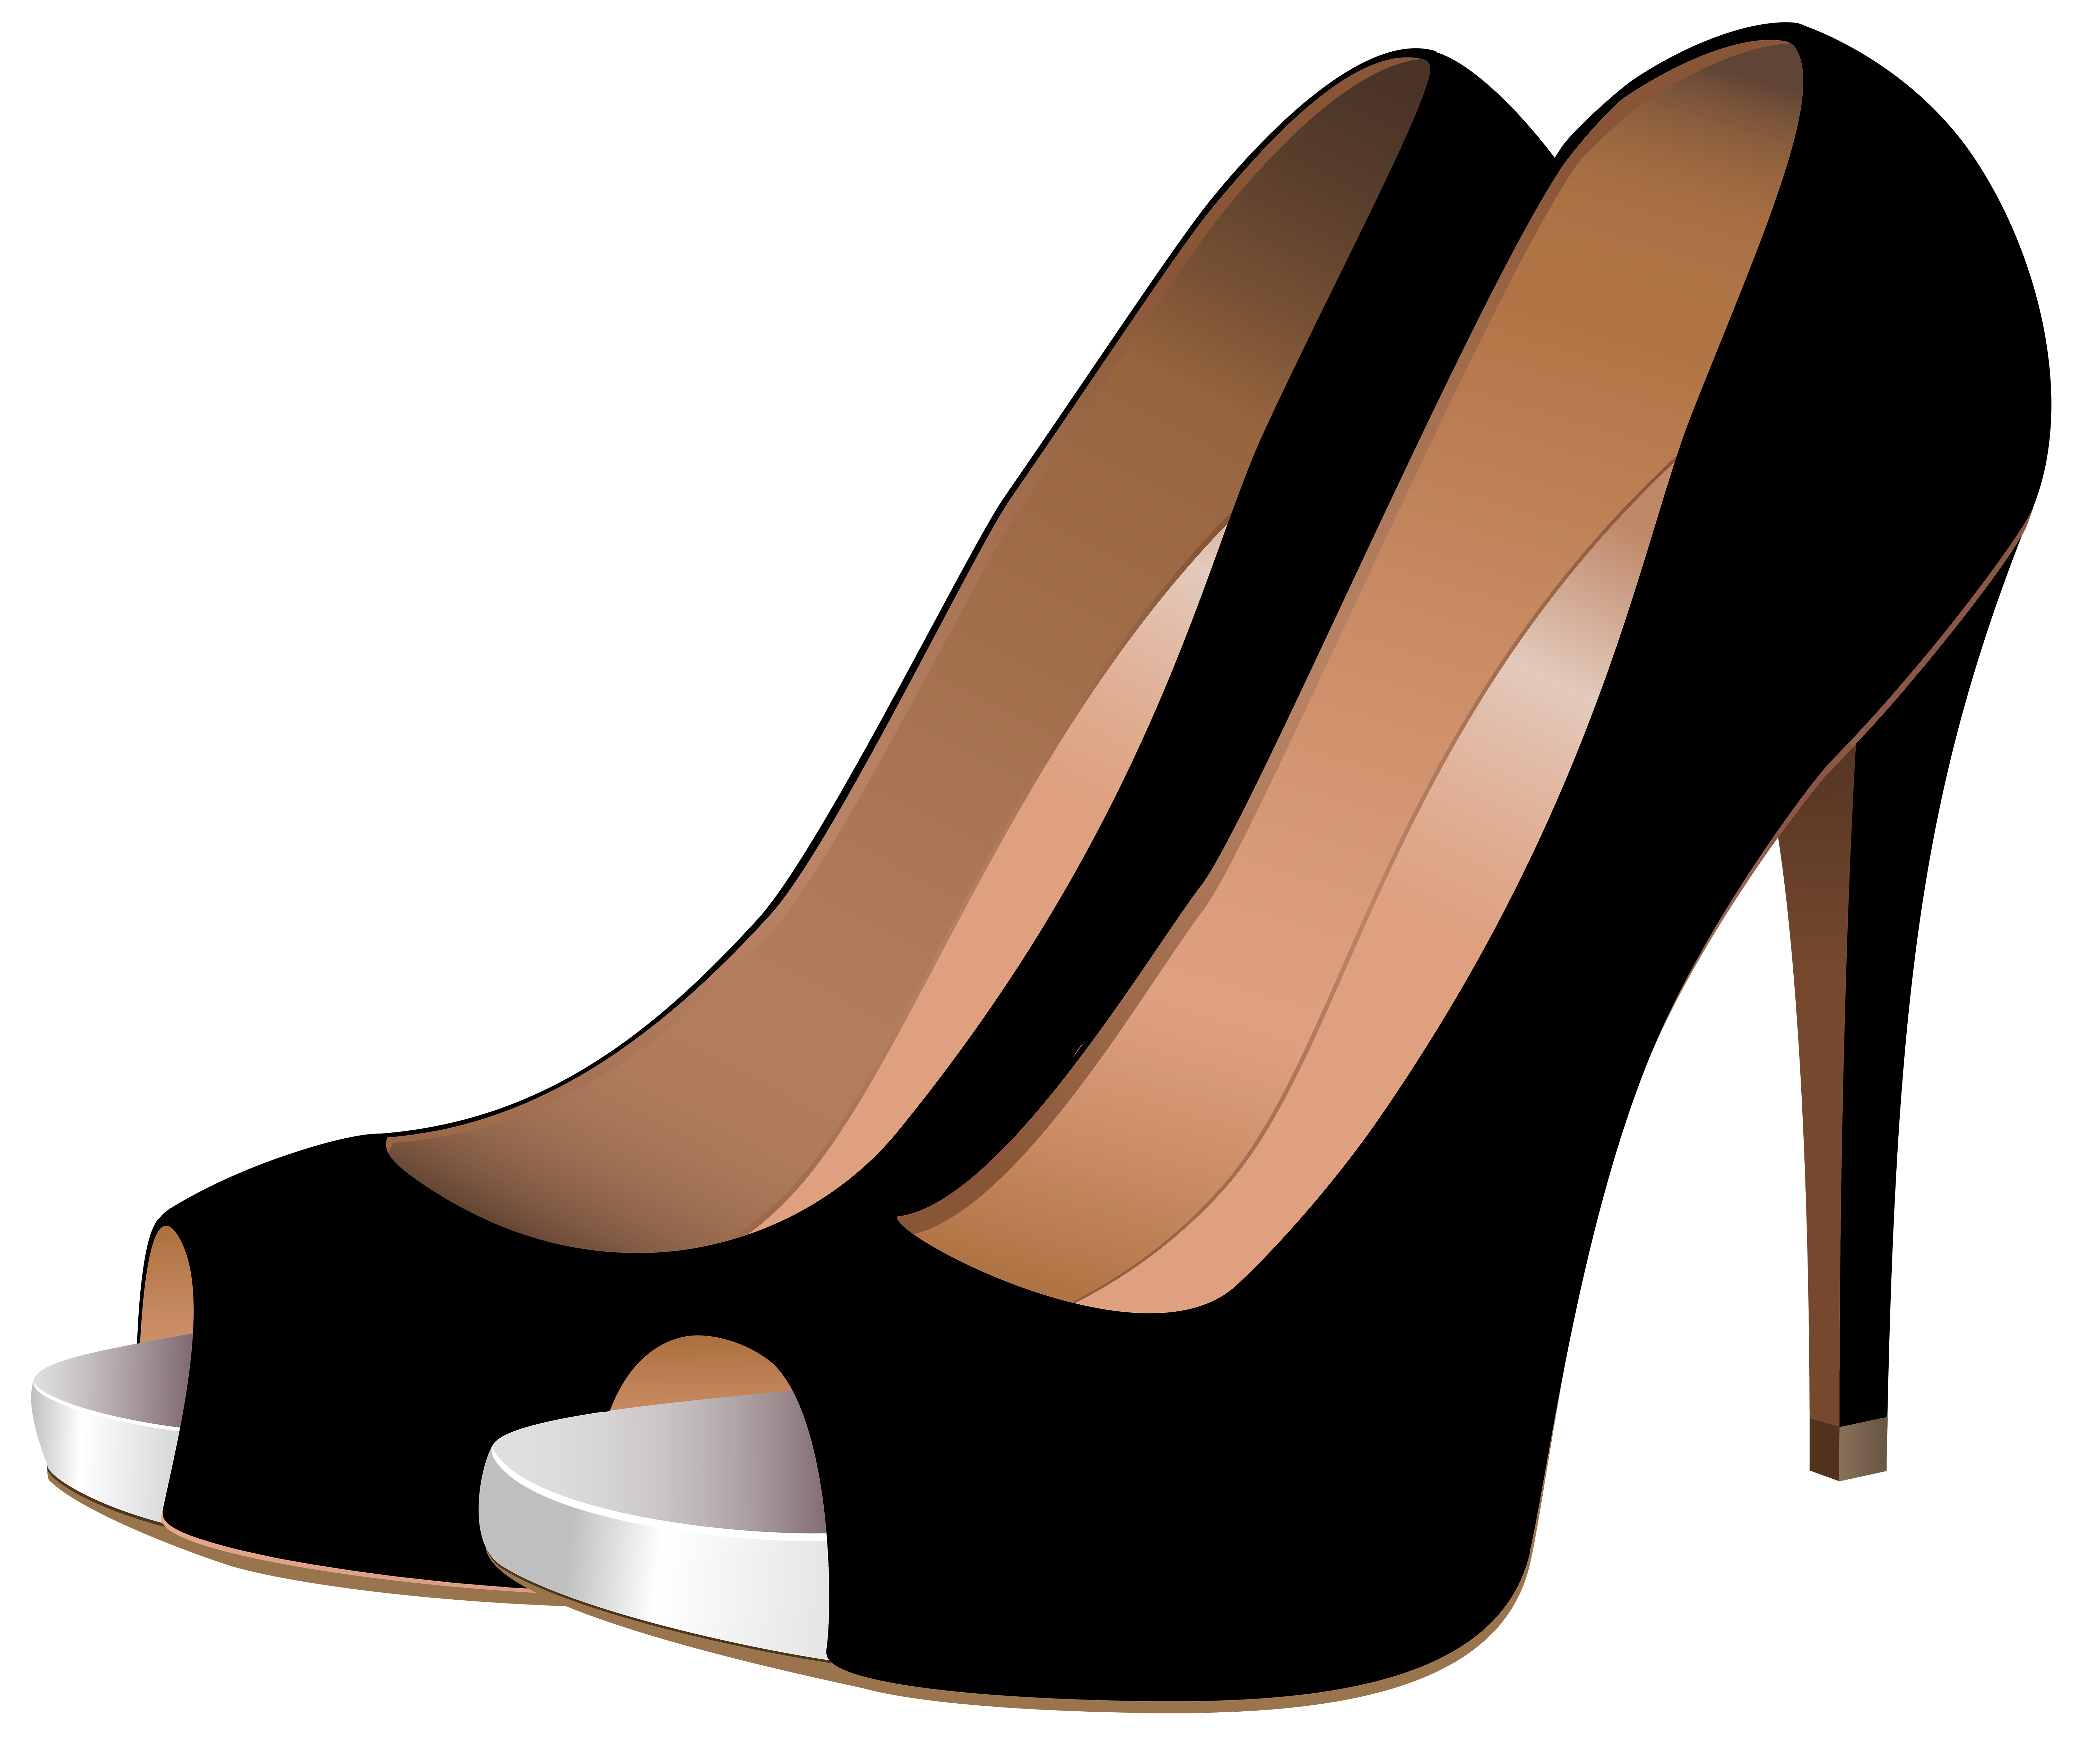 high-heeled-footwear-stiletto-heel-shoe-clip-art-women-shoes-png